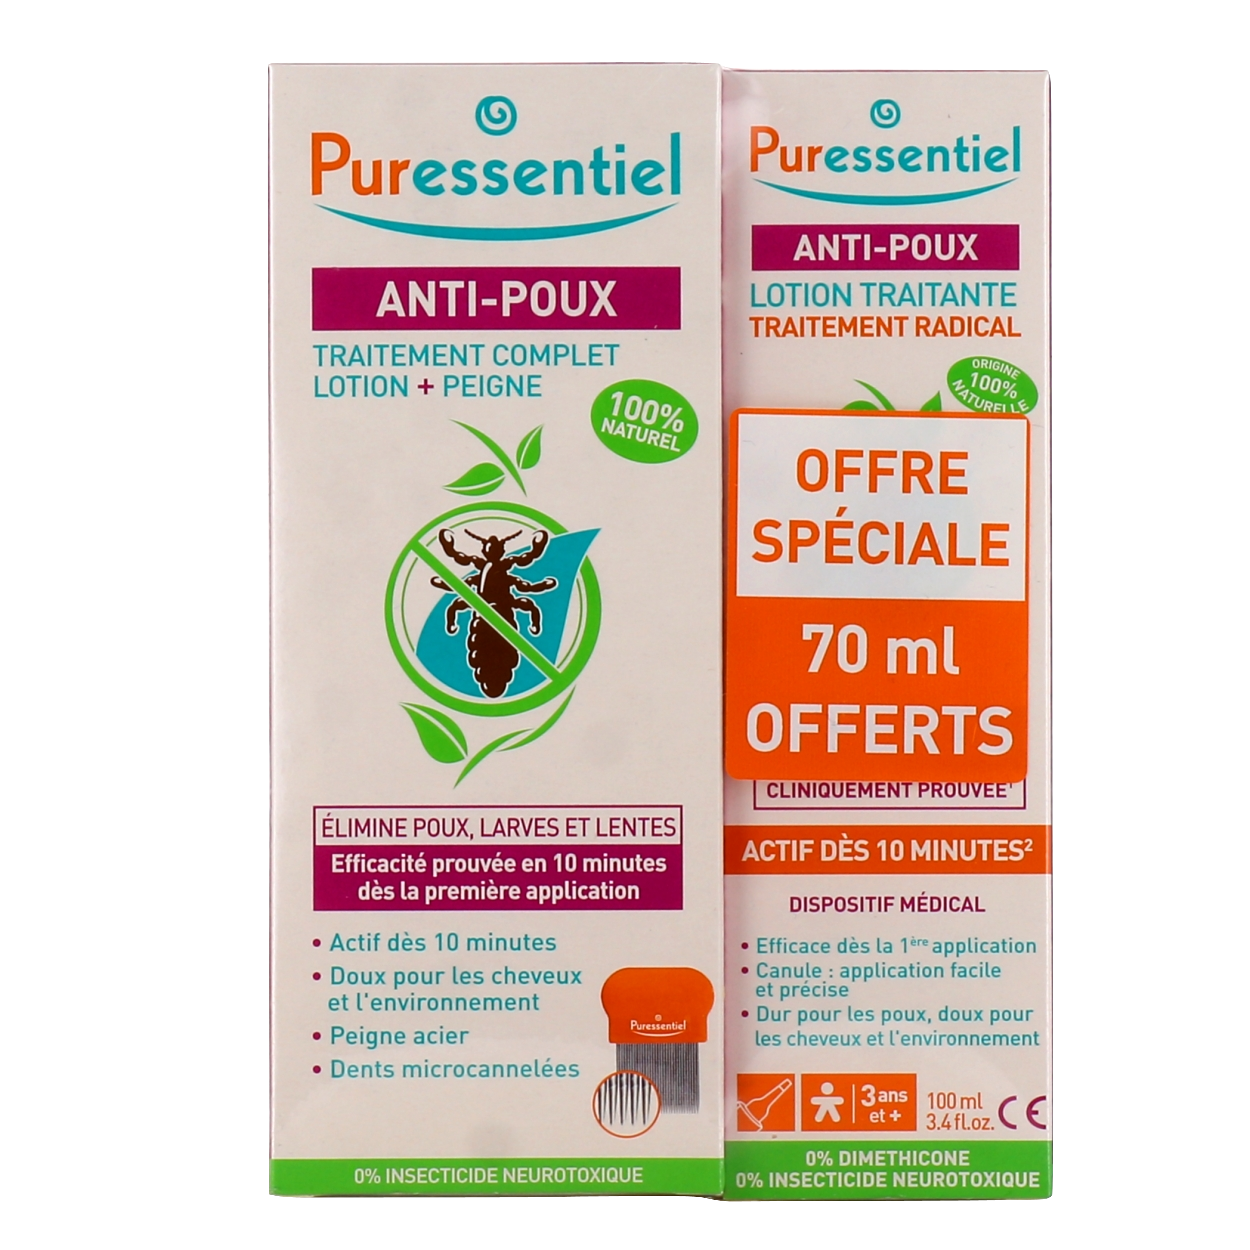 Duo LP pro lotion anti poux - 2 x 150ml - Pharmacie en ligne